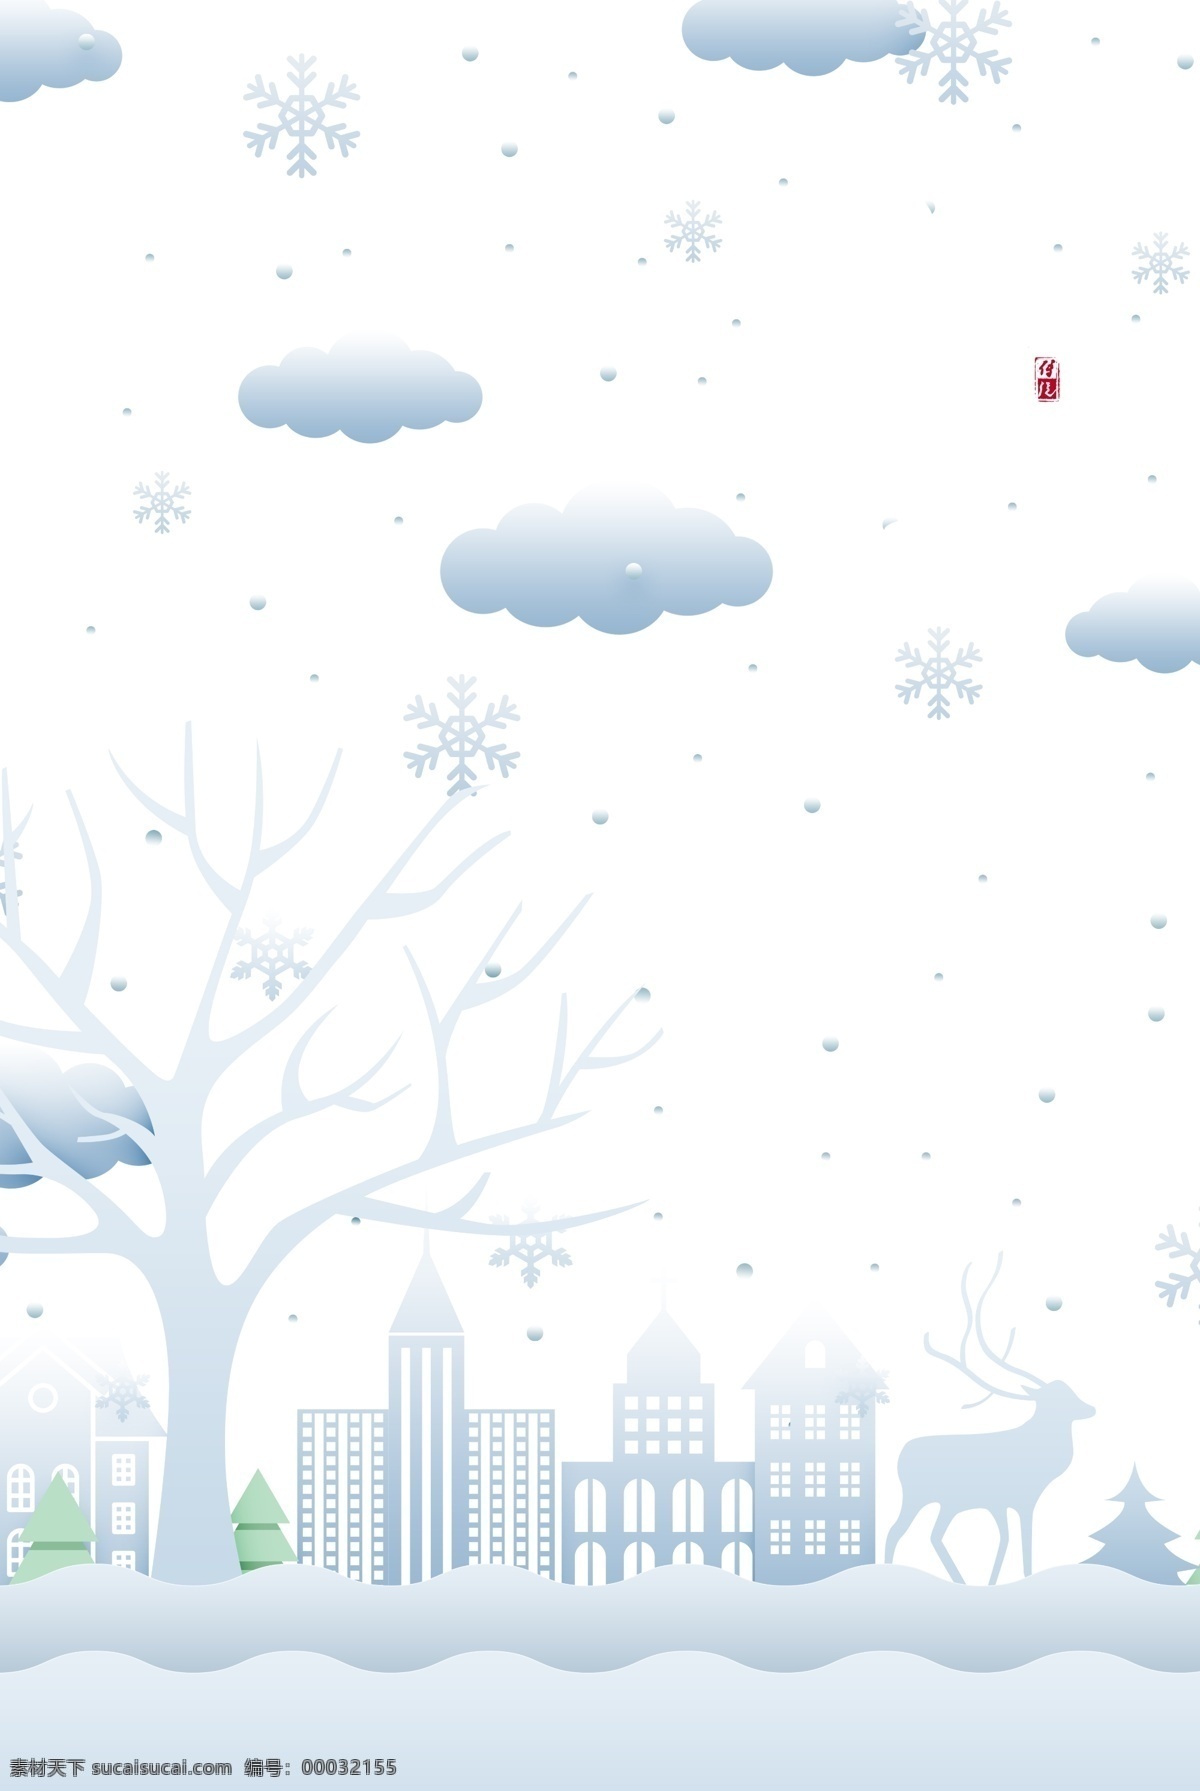 冬天 背景 剪影 城市 元素 冬天背景 剪影城市 印章 字体元素 云 树枝 小雪元素 冬天季节 分层 背景素材